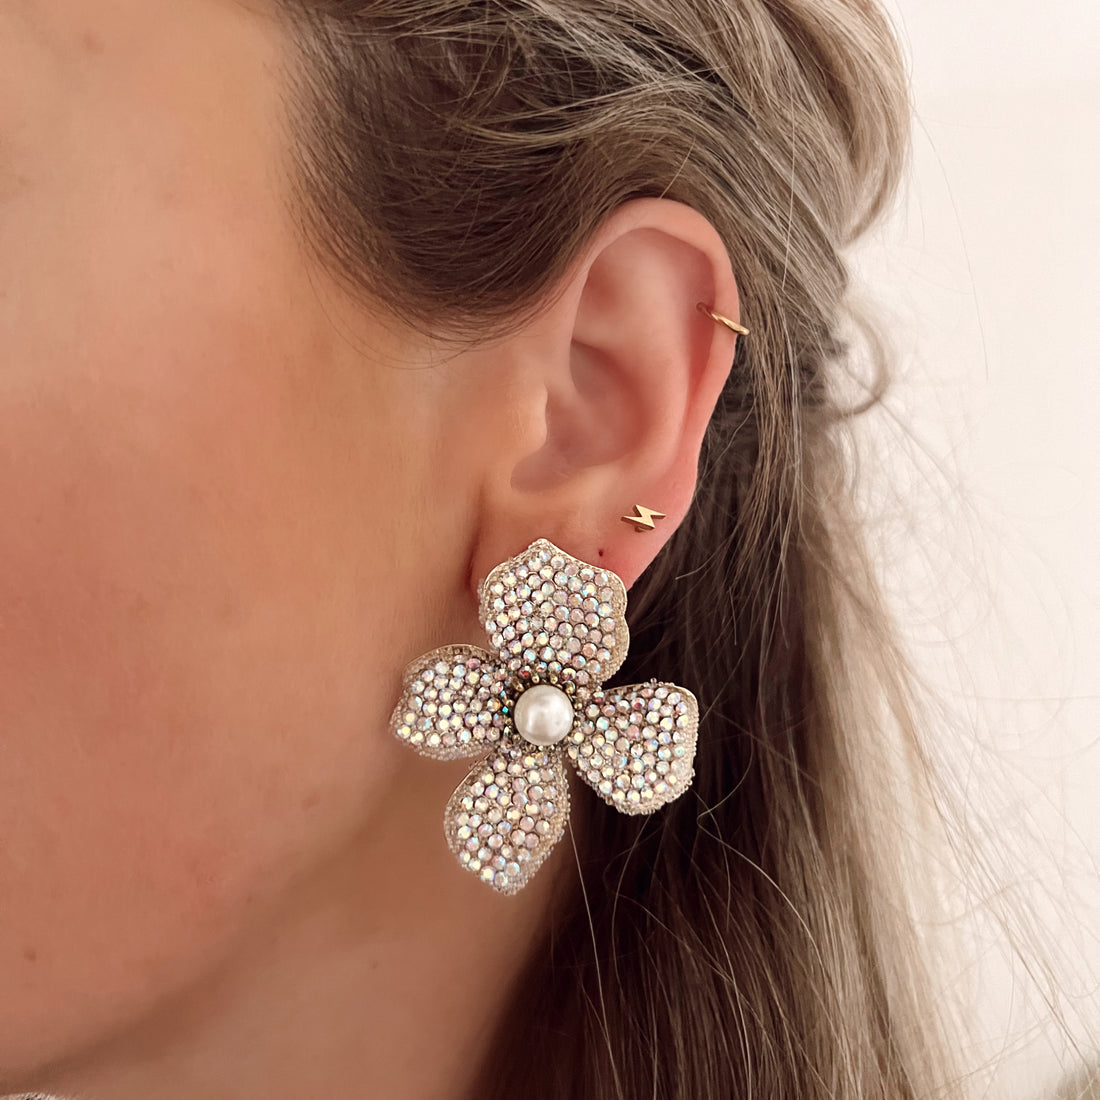 Witte statement oorbellen in de vorm van een bloem, ingelegd met steentjes. Afmetingen: 5 cm. Witte grote statement earrings bloem met steentjes. Grote oorbellen witte bloem.